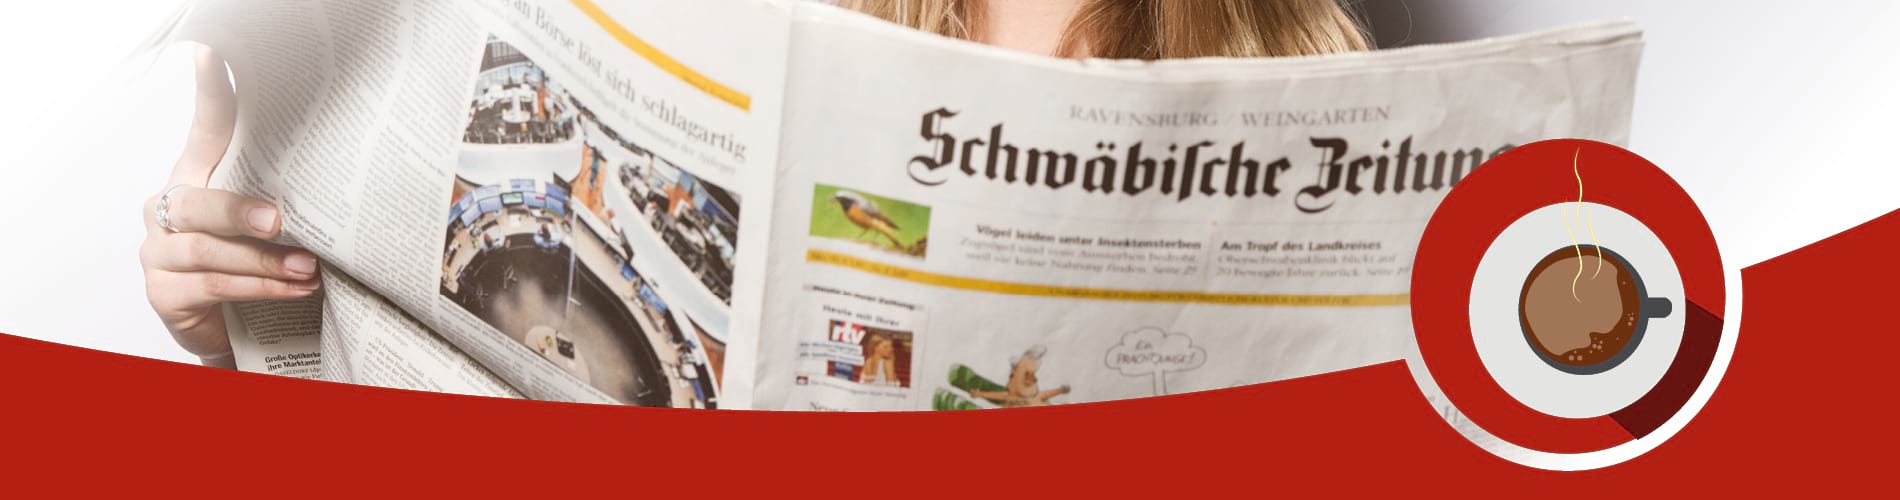 Eine Frau hält die gedruckte Schwäbische Zeitung in der Hand und liest diese. Eine gezeichnete Kaffeetasse assoziiert das Thema "Newsletter am Morgen" der Schwäbischen Zeitung.